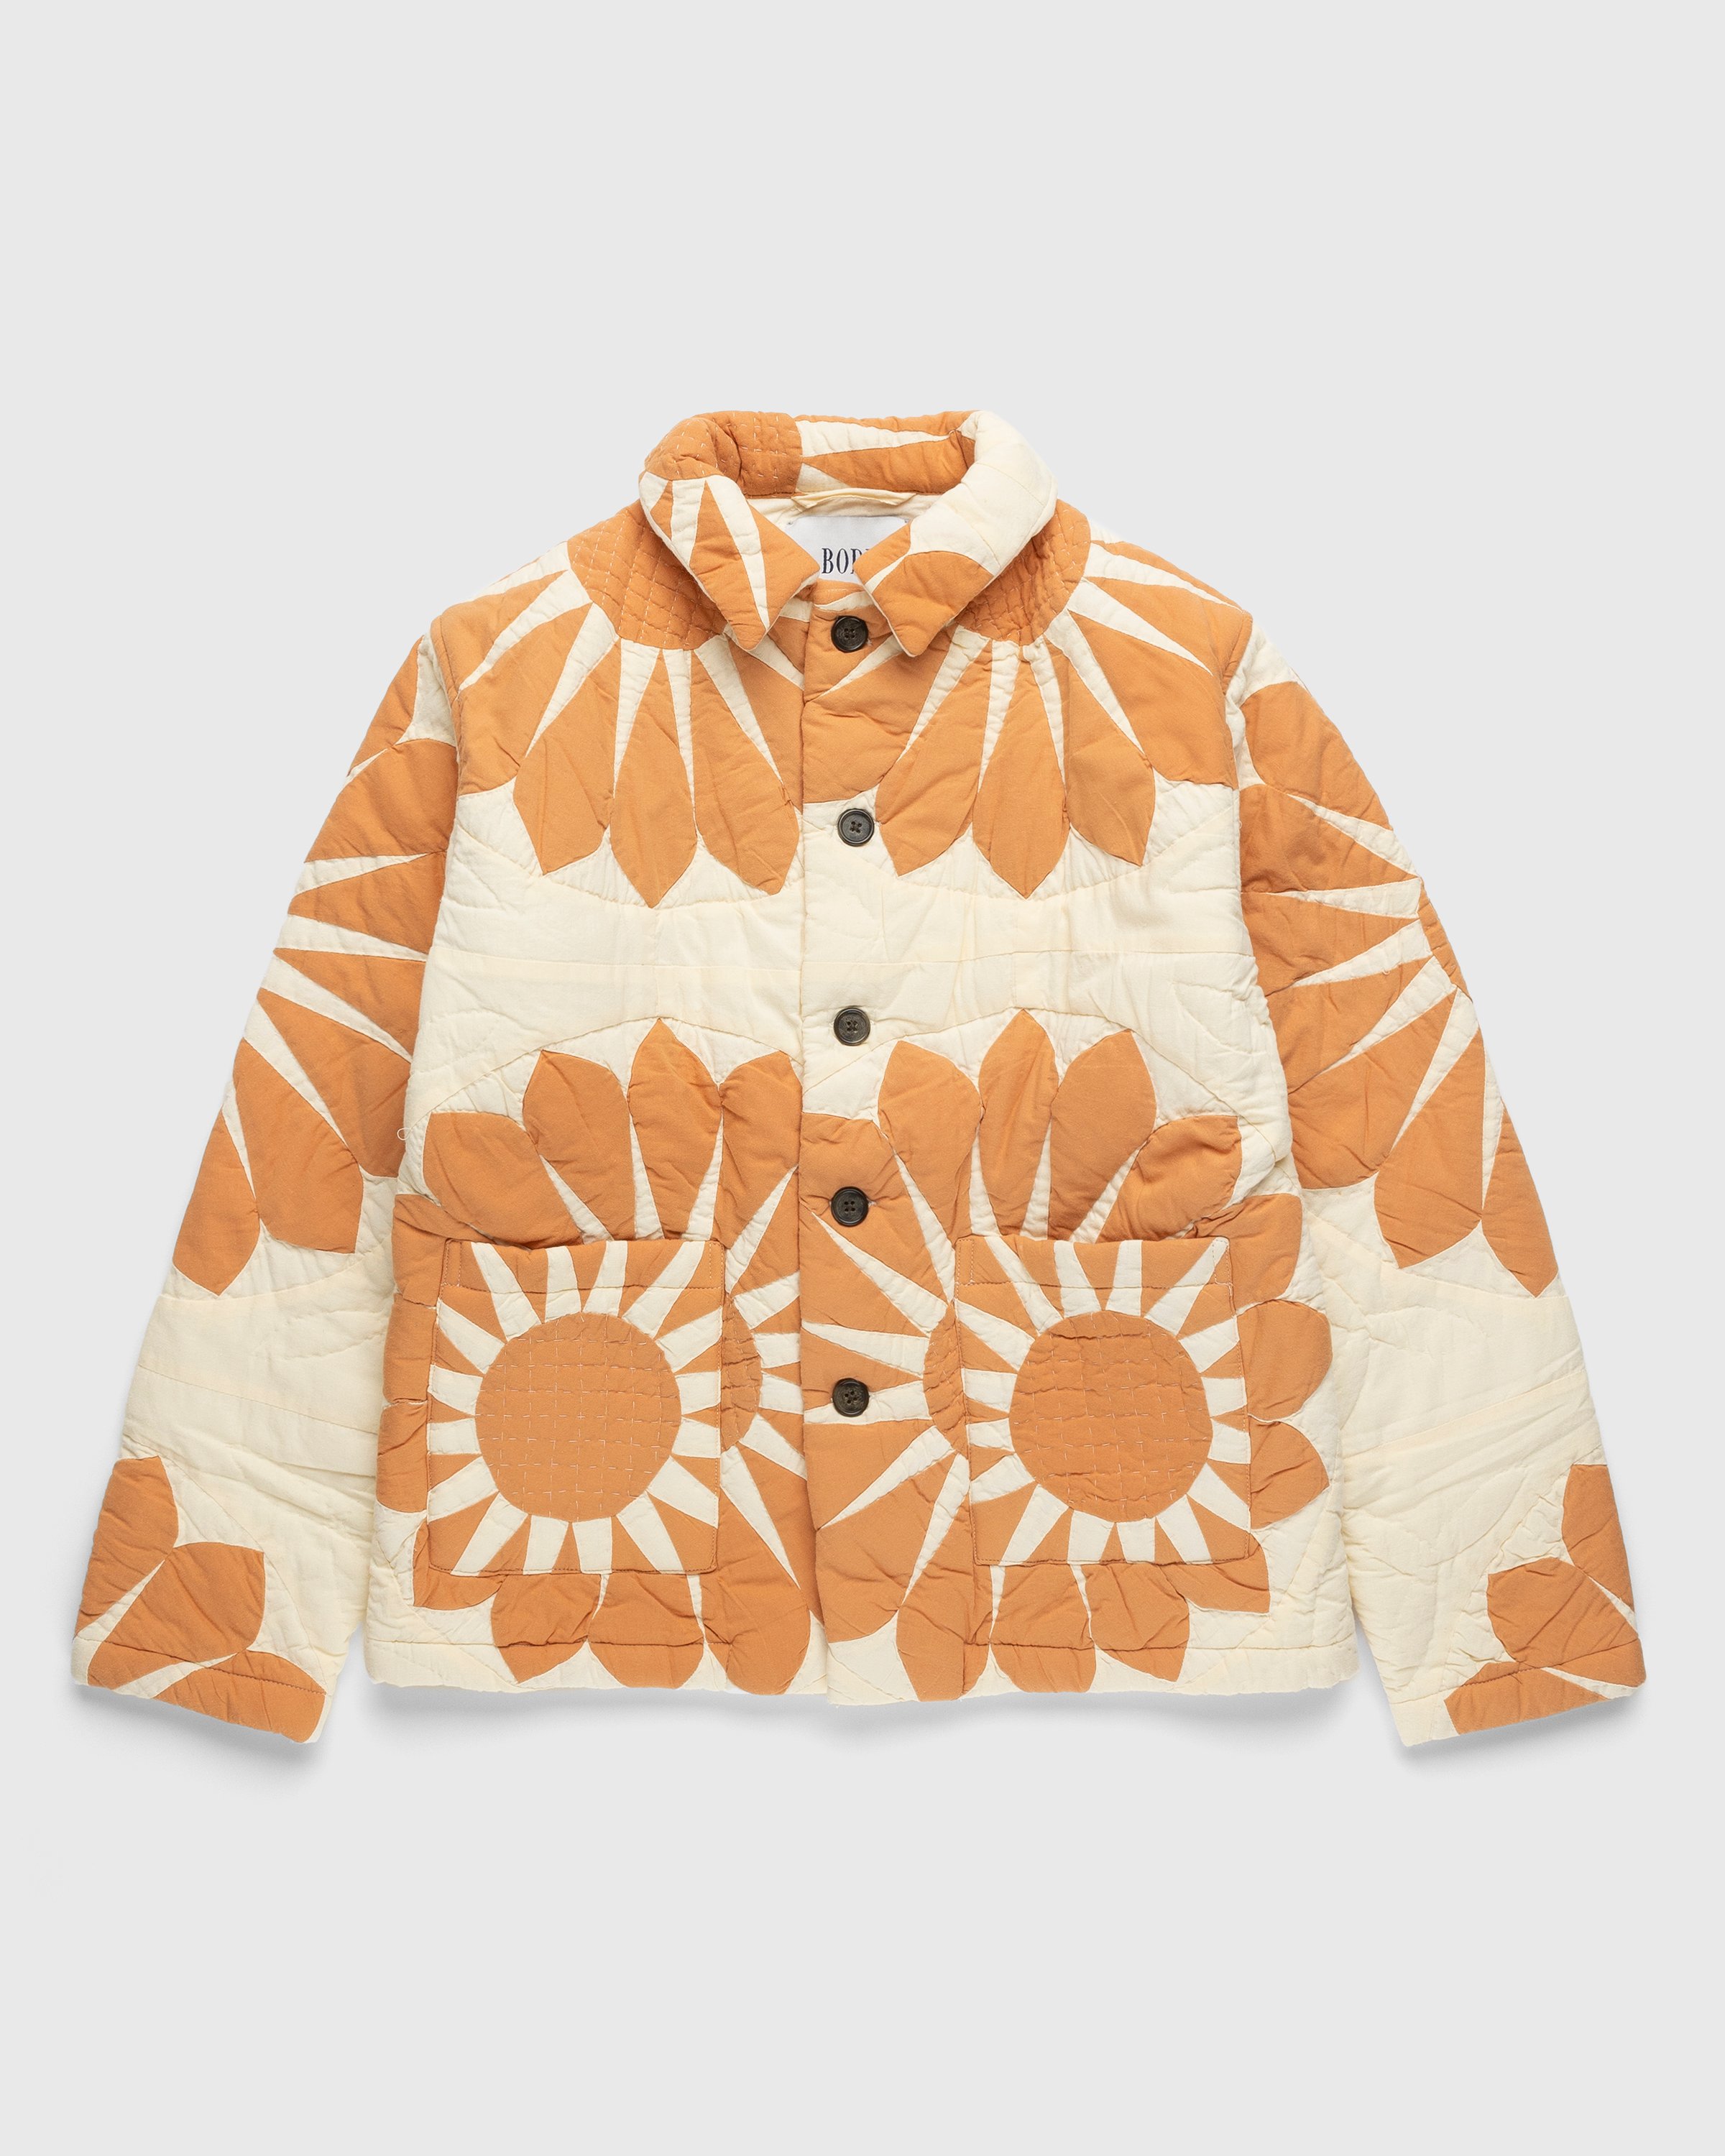 Bode - Grand Daisy Workwear Jacket Orange - Clothing - Orange - Image 1